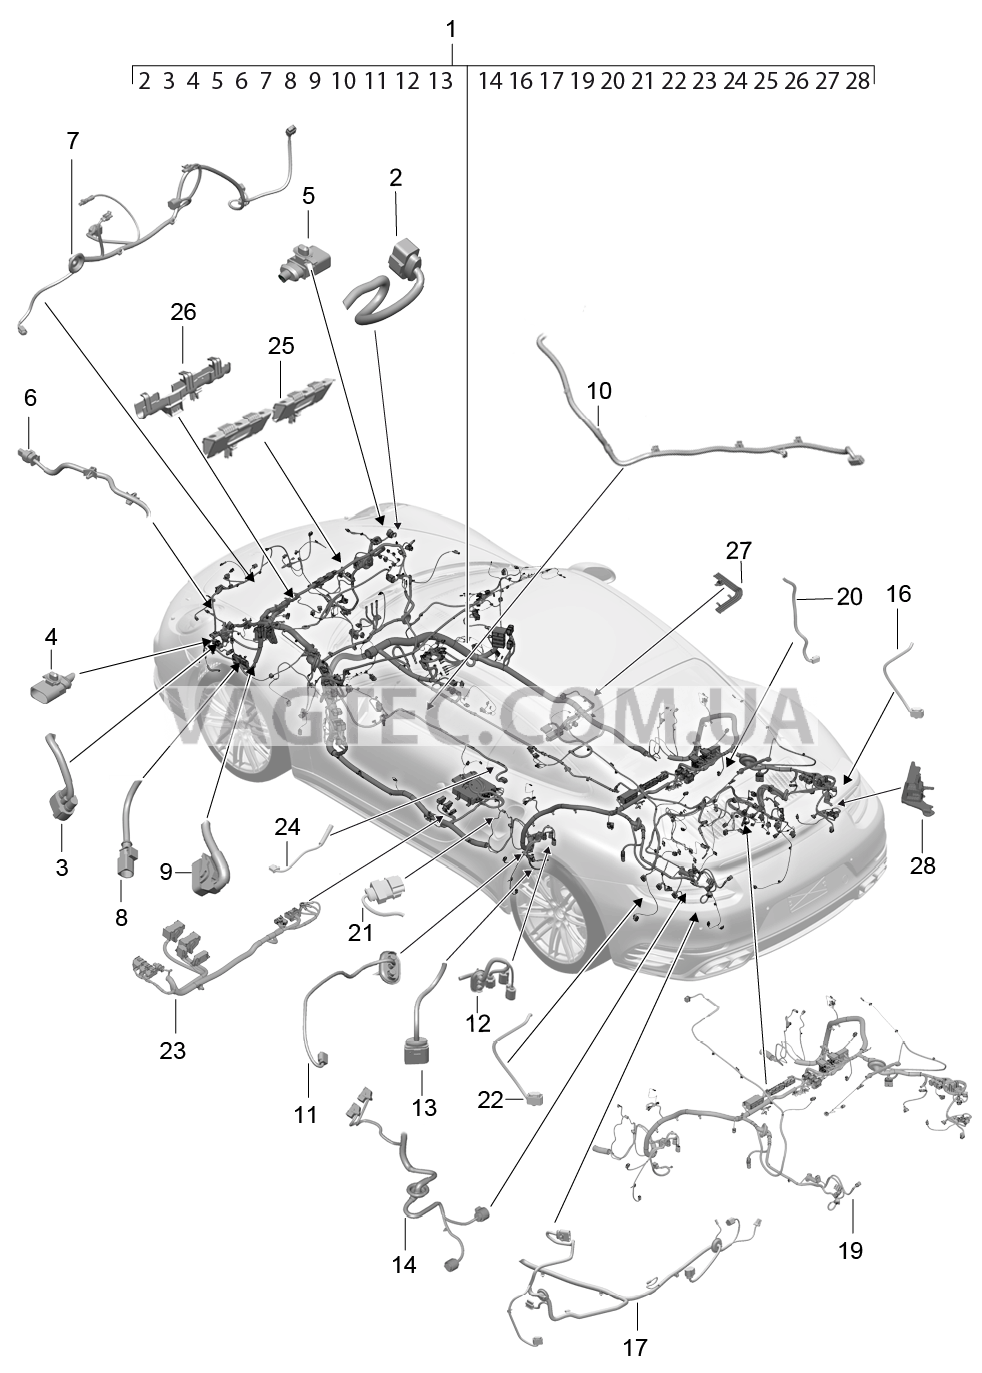 902-013 Жгуты проводов, Салон, и, Сегмент детали для PORSCHE Porsche991Turbo 2014-2017